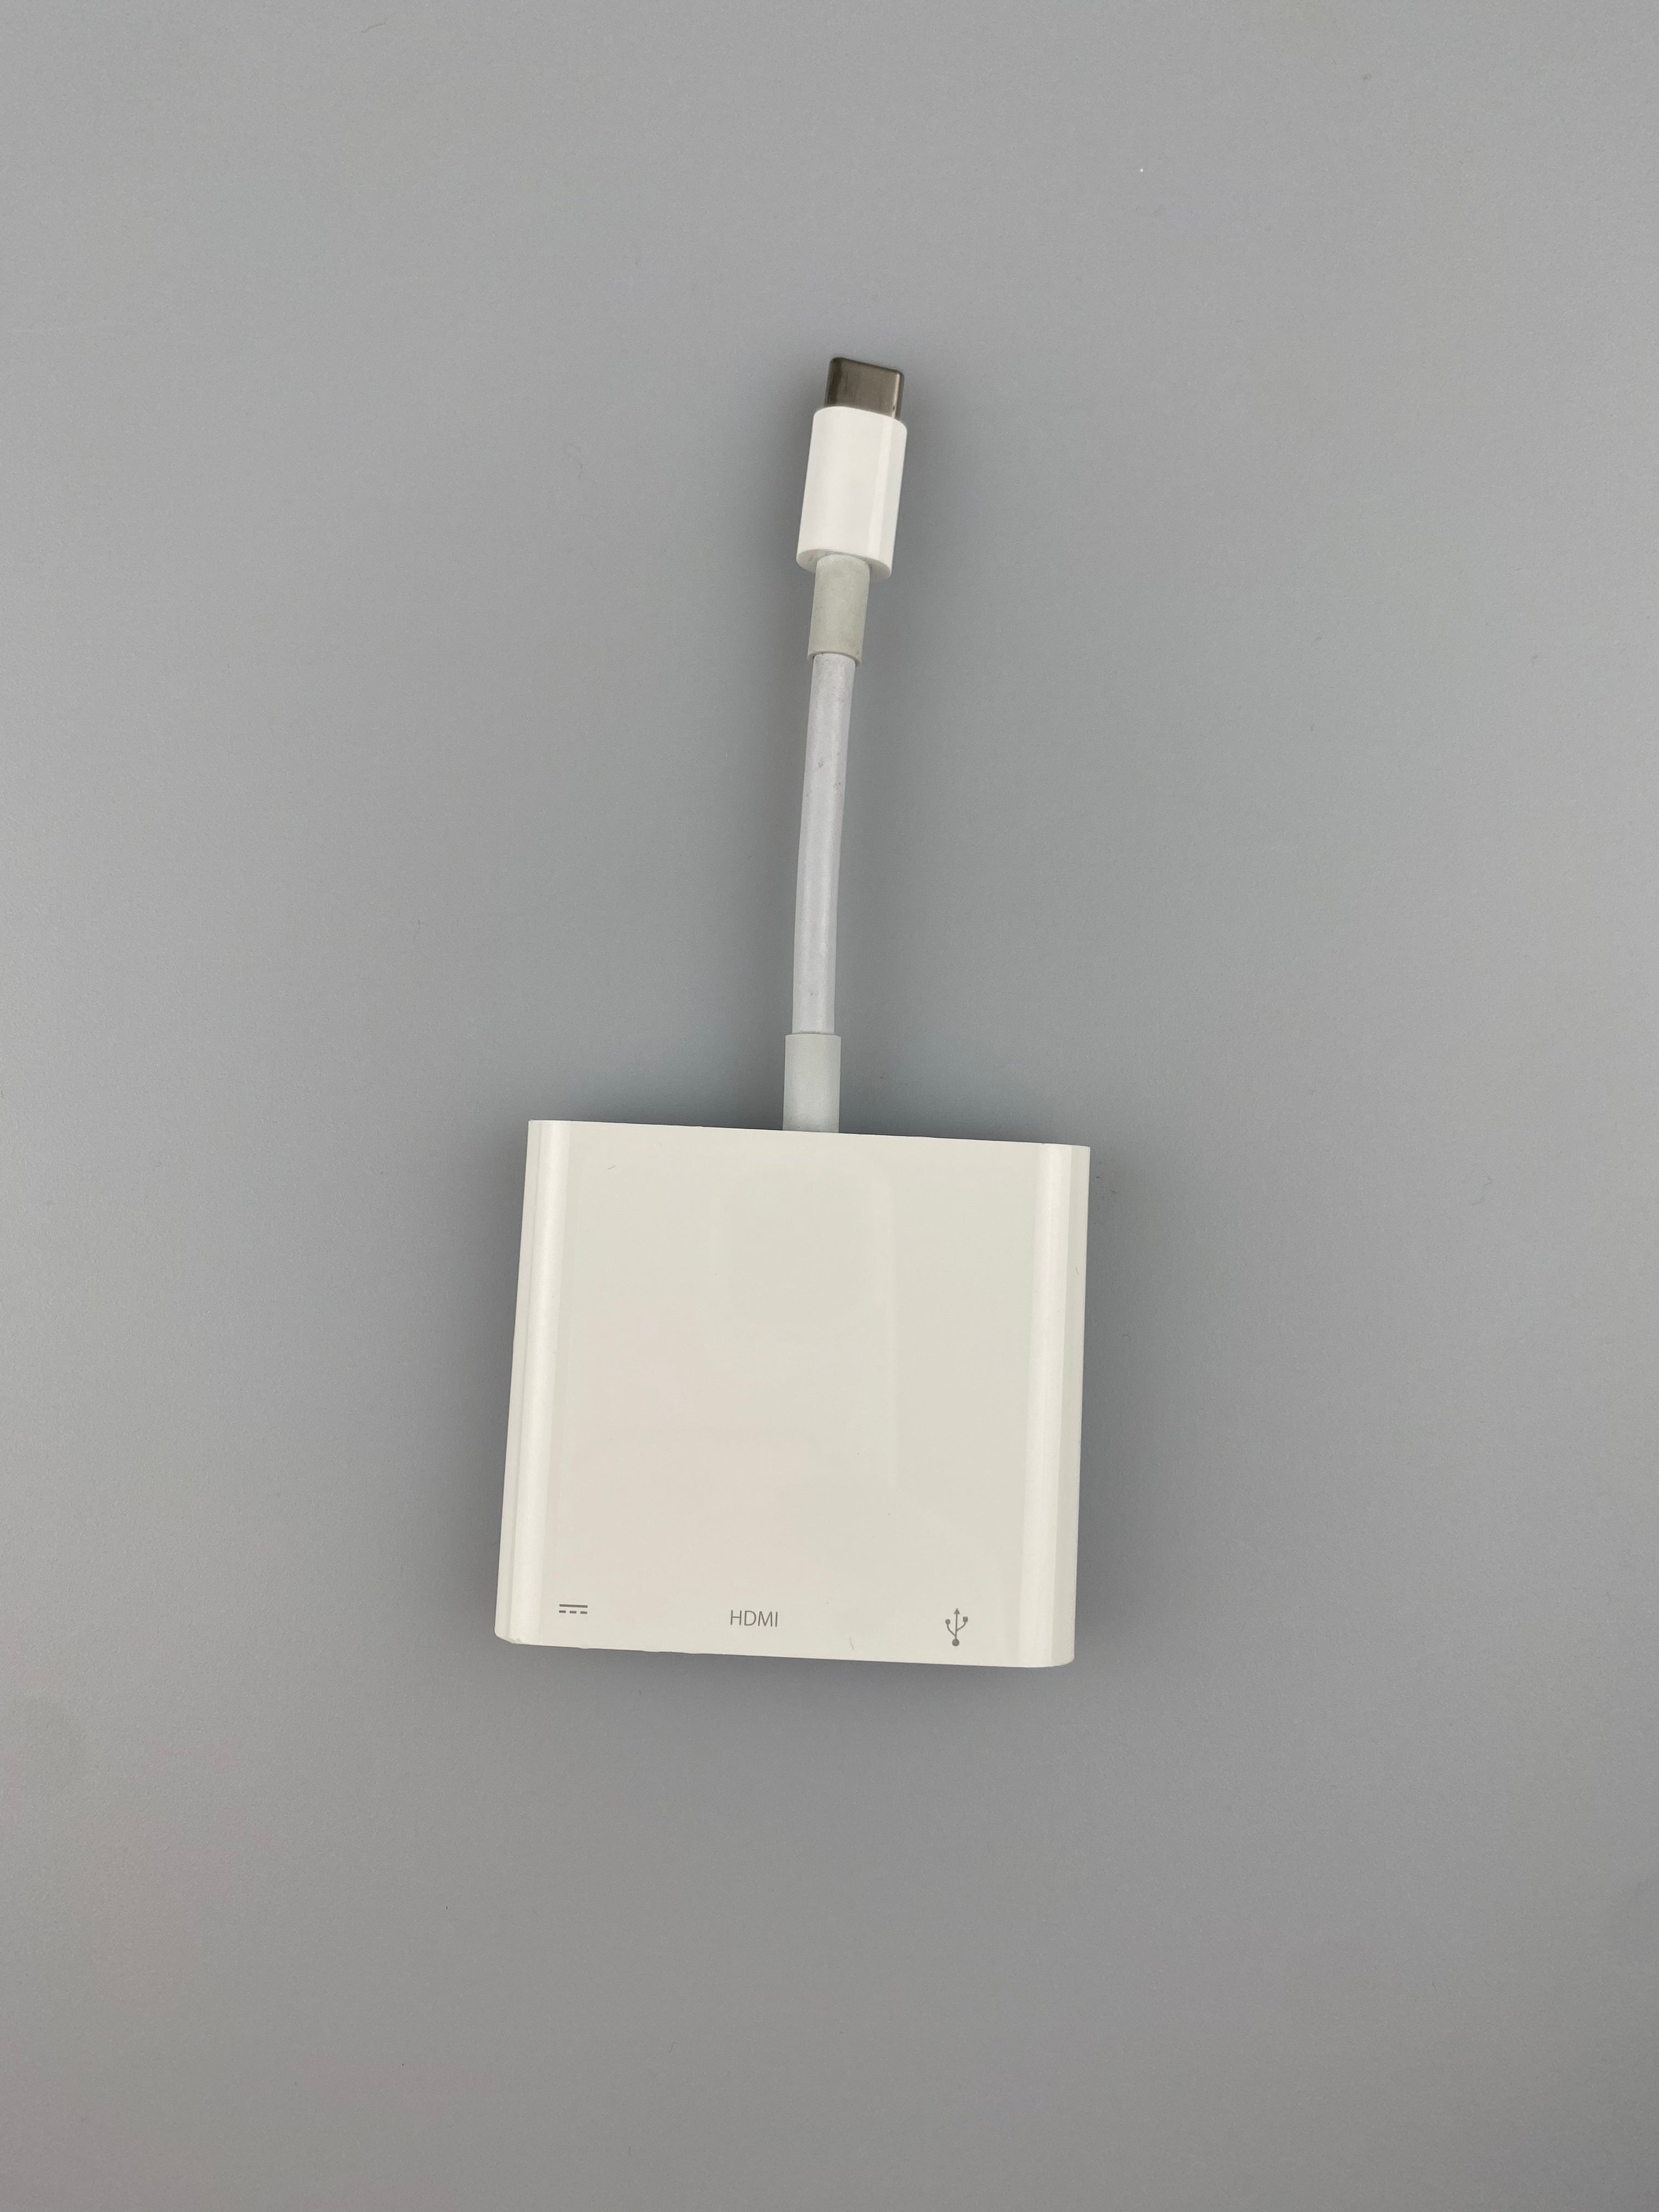 Multiport-adapter för Mac och iPad Pro med USB-C-anslutning